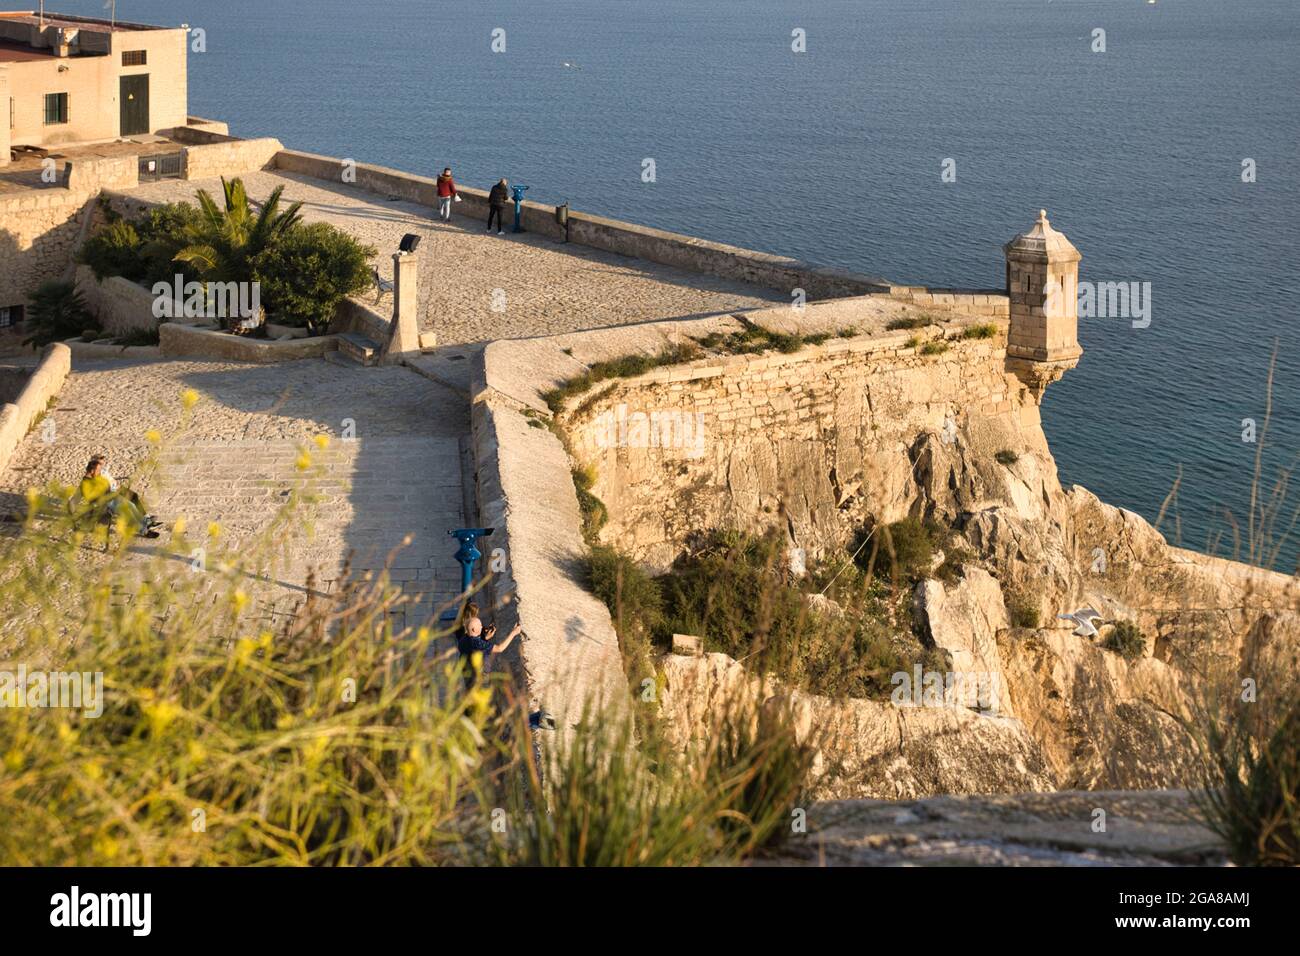 Vue sur le sommet des murs du château de Santa Barbara avec la mer Méditerranée au-delà, à Alicante, Espagne. Personnes vue Banque D'Images